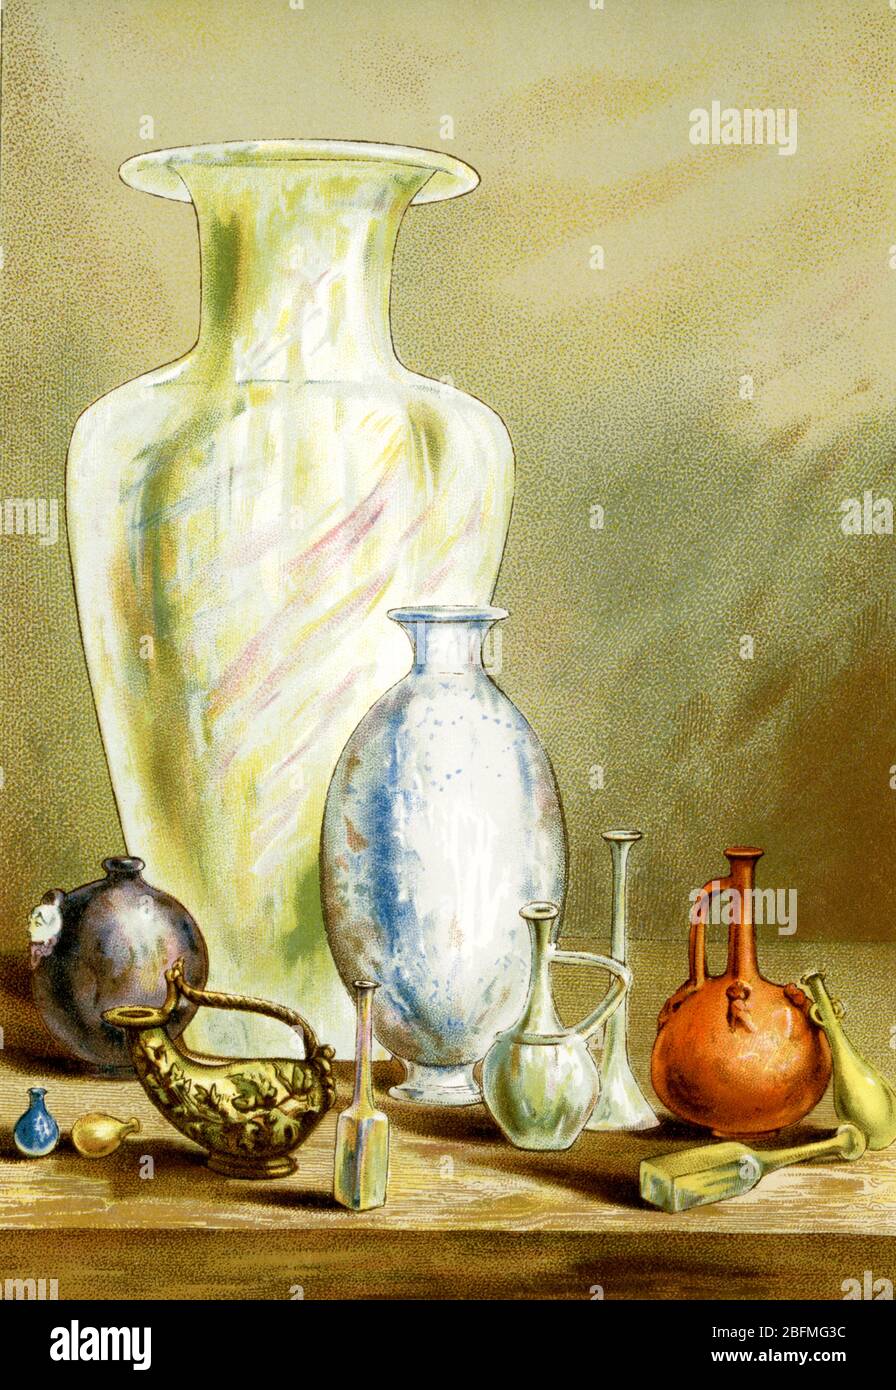 Diese Illustration aus dem späten 19. Jahrhundert zeigt eine rekonstruierte Ansicht von Funden alter römischer Vasen, Glaswaren und Töpferwaren. Stockfoto